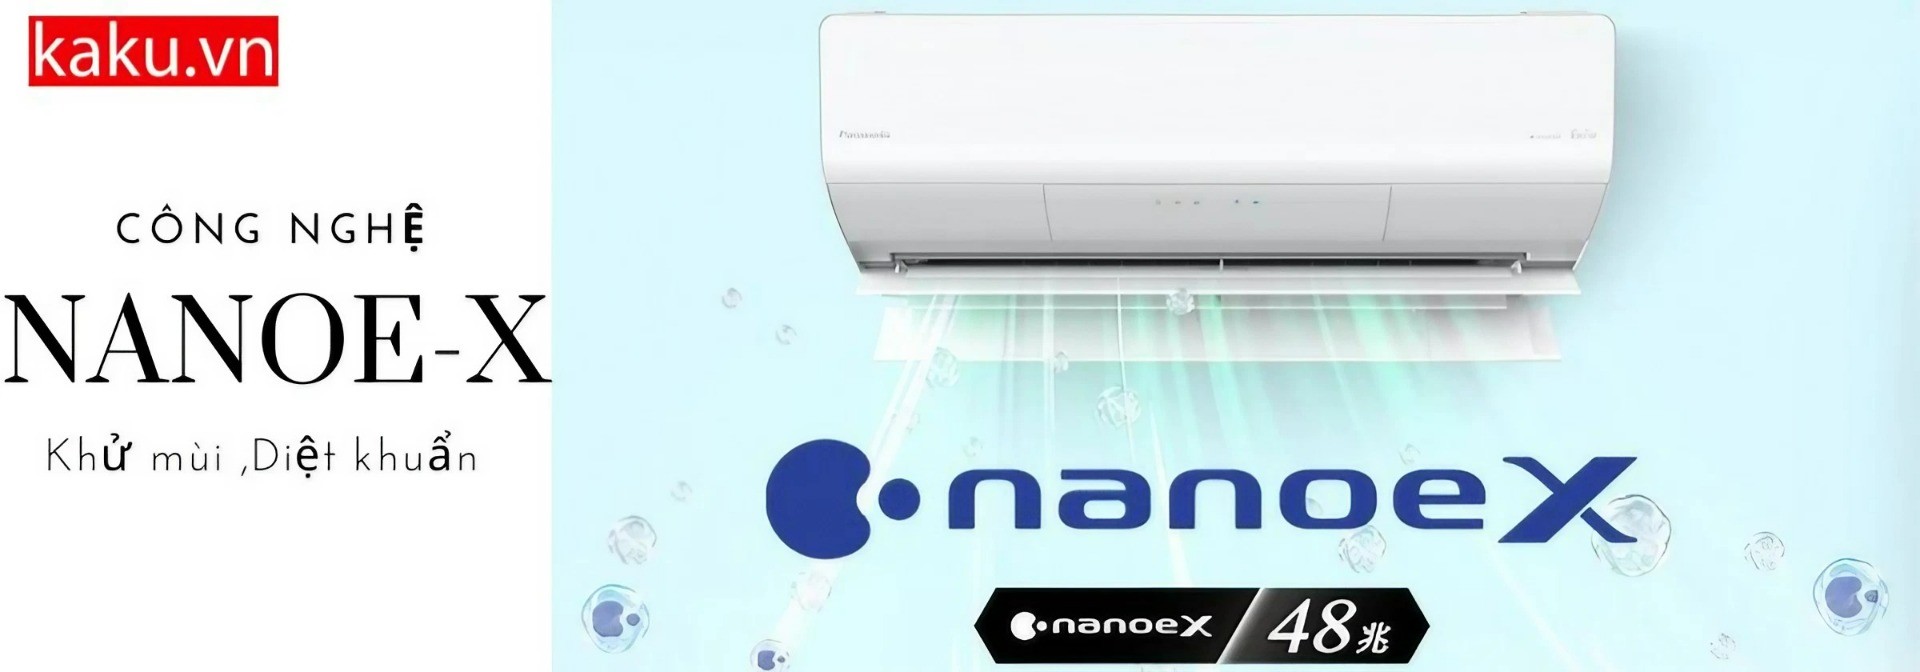 Công nghệ NanoeX khử mùi